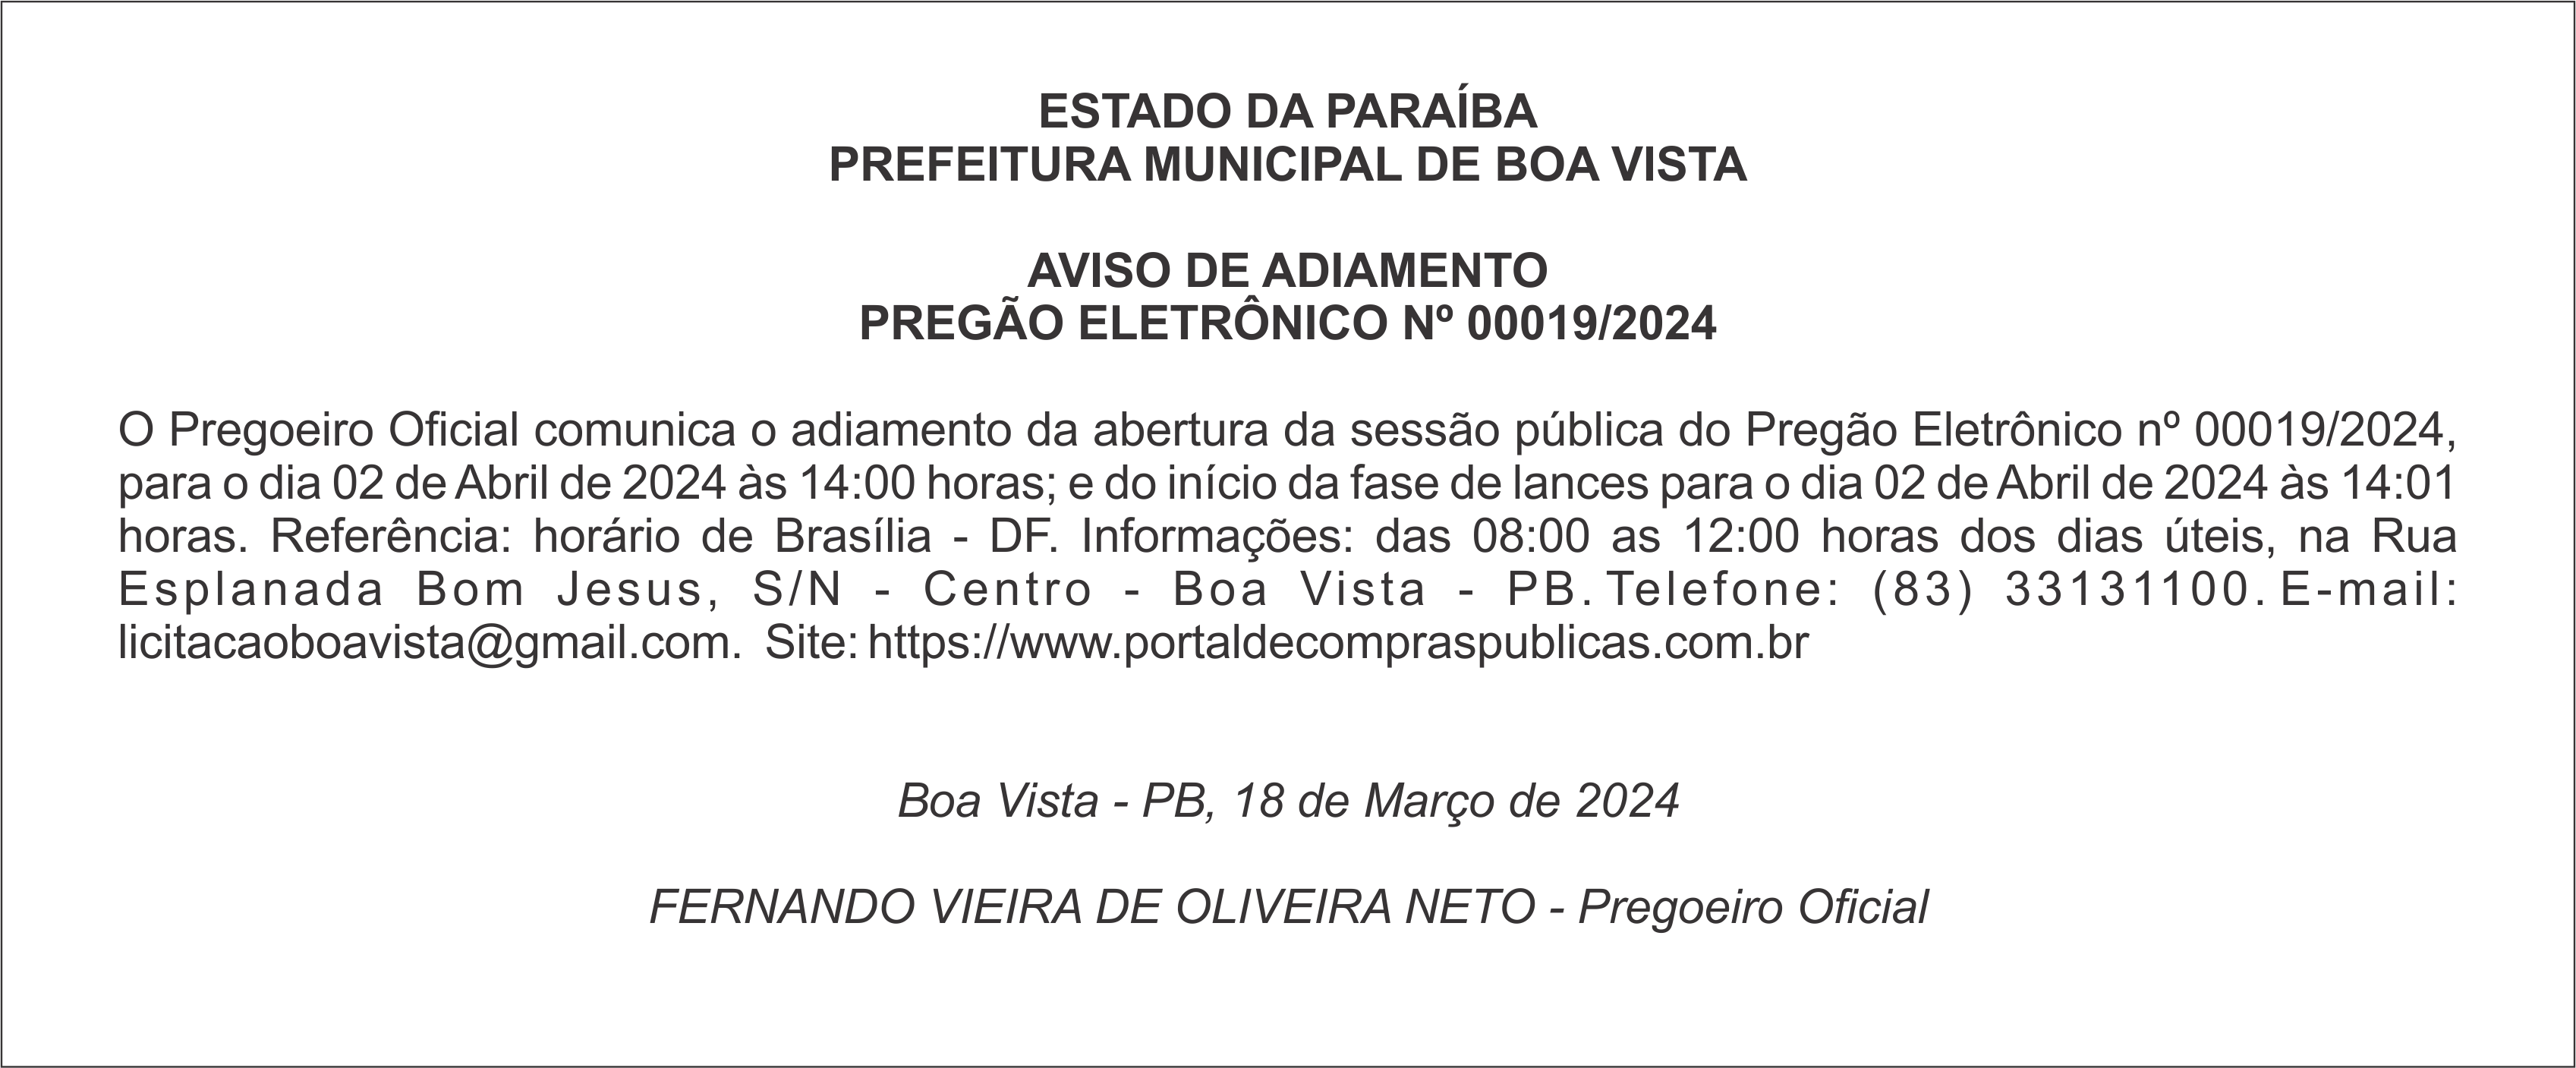 PREFEITURA MUNICIPAL DE BOA VISTA – AVISO DE ADIAMENTO – PREGÃO ELETRÔNICO Nº 00019/2024